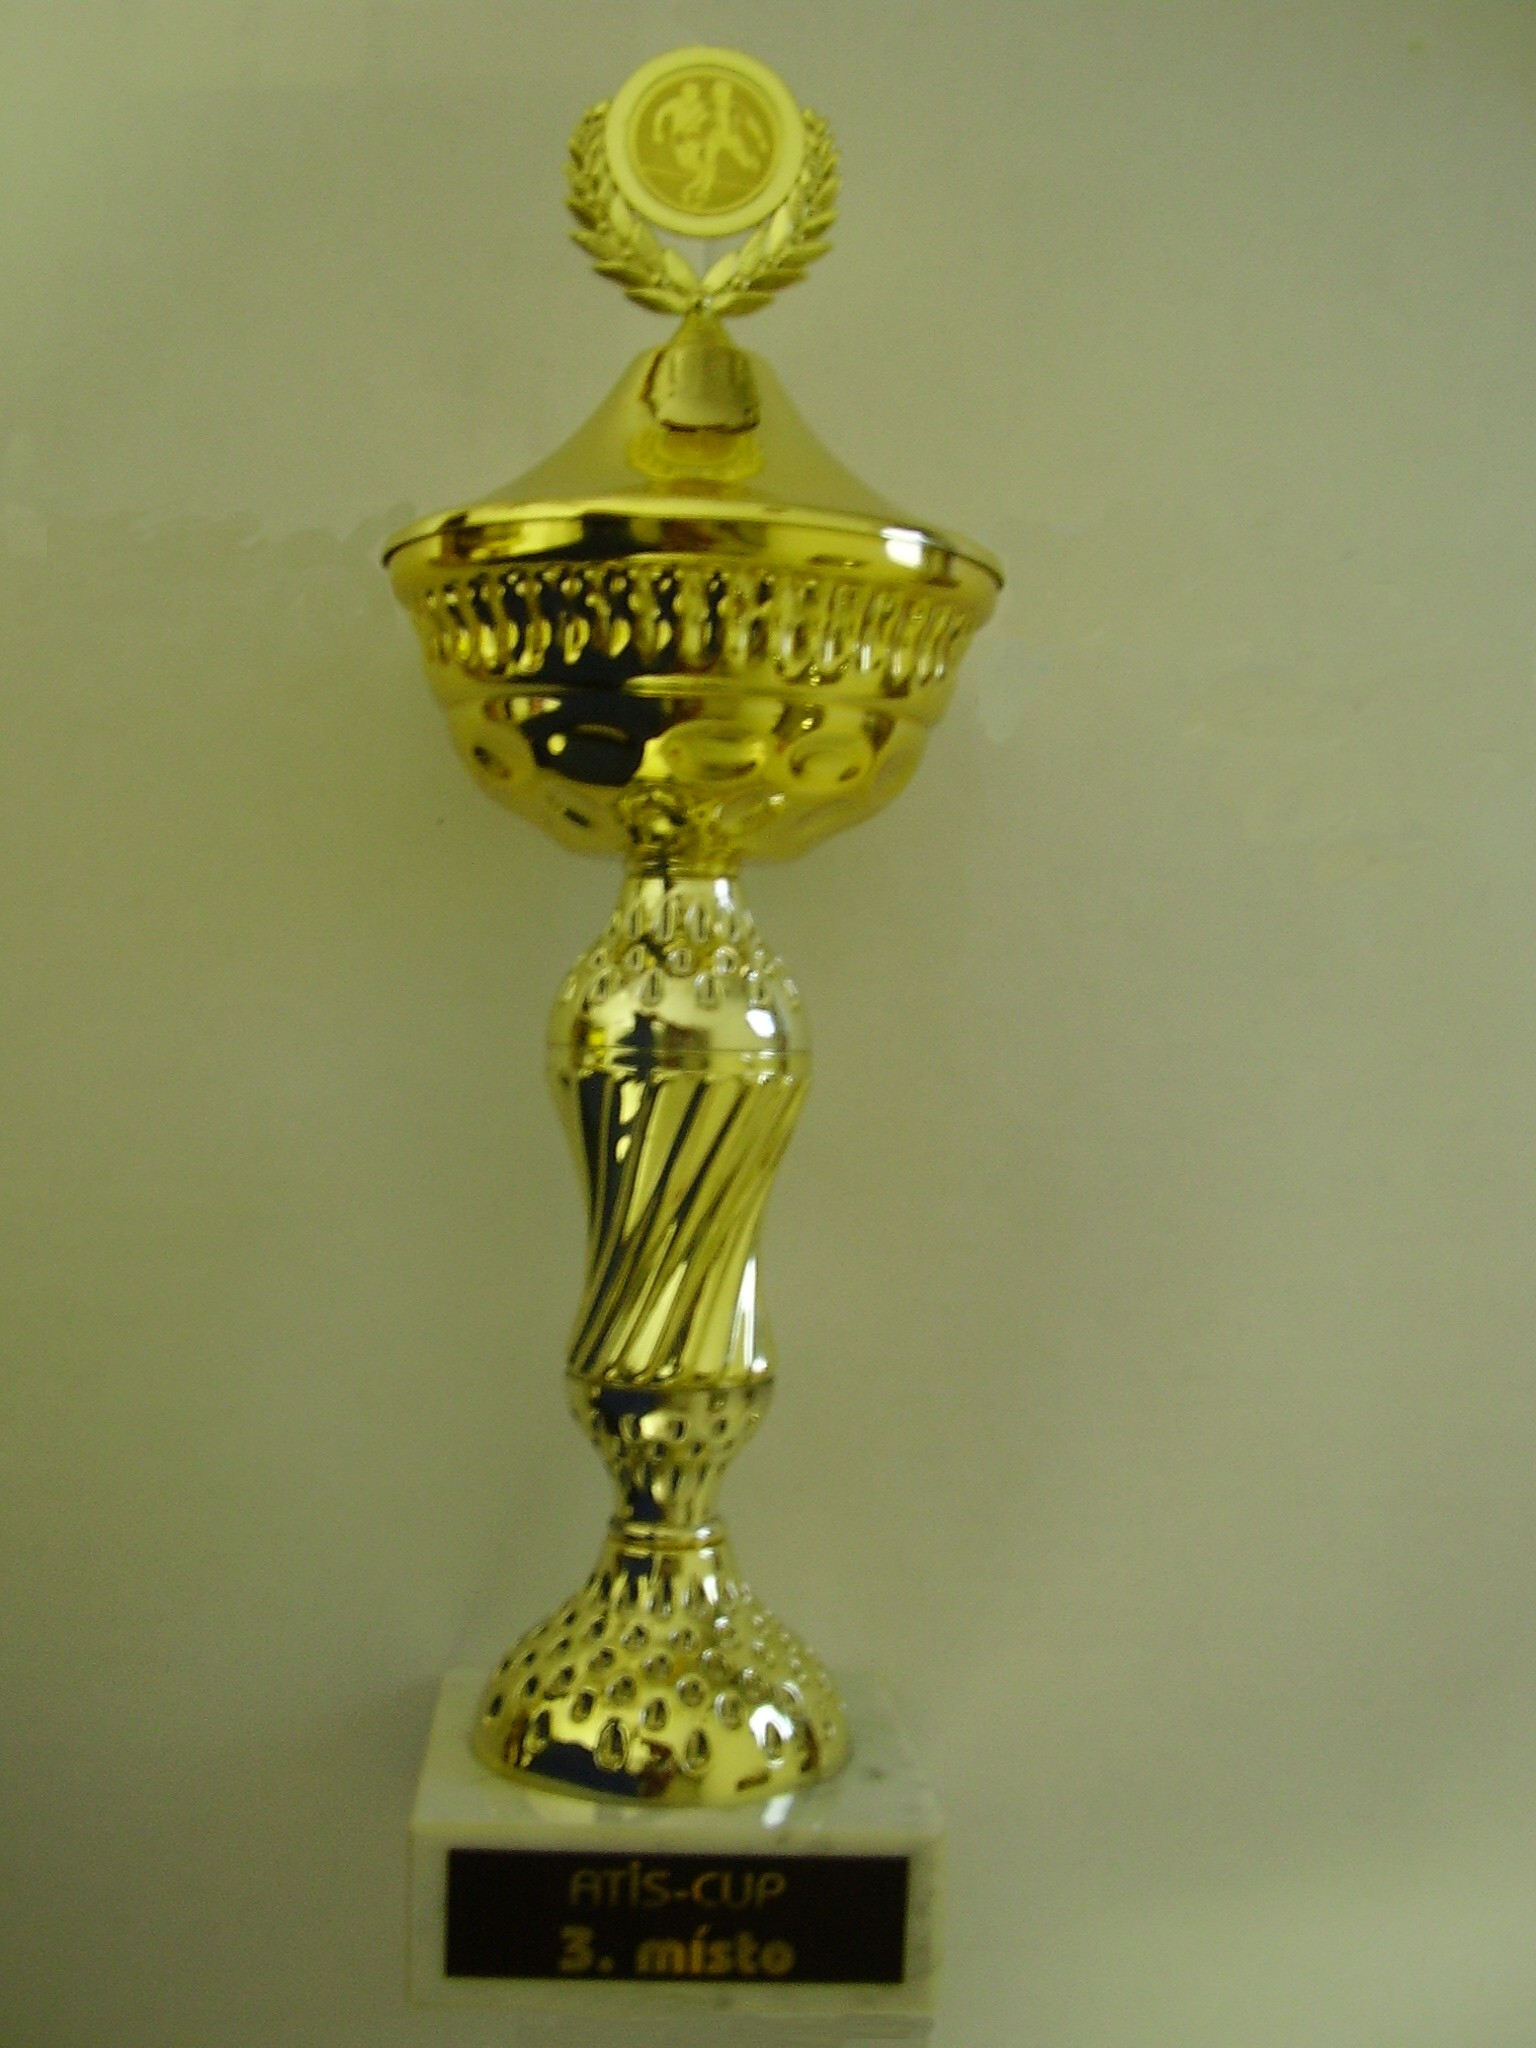 ATIS - CUP 2006.jpg